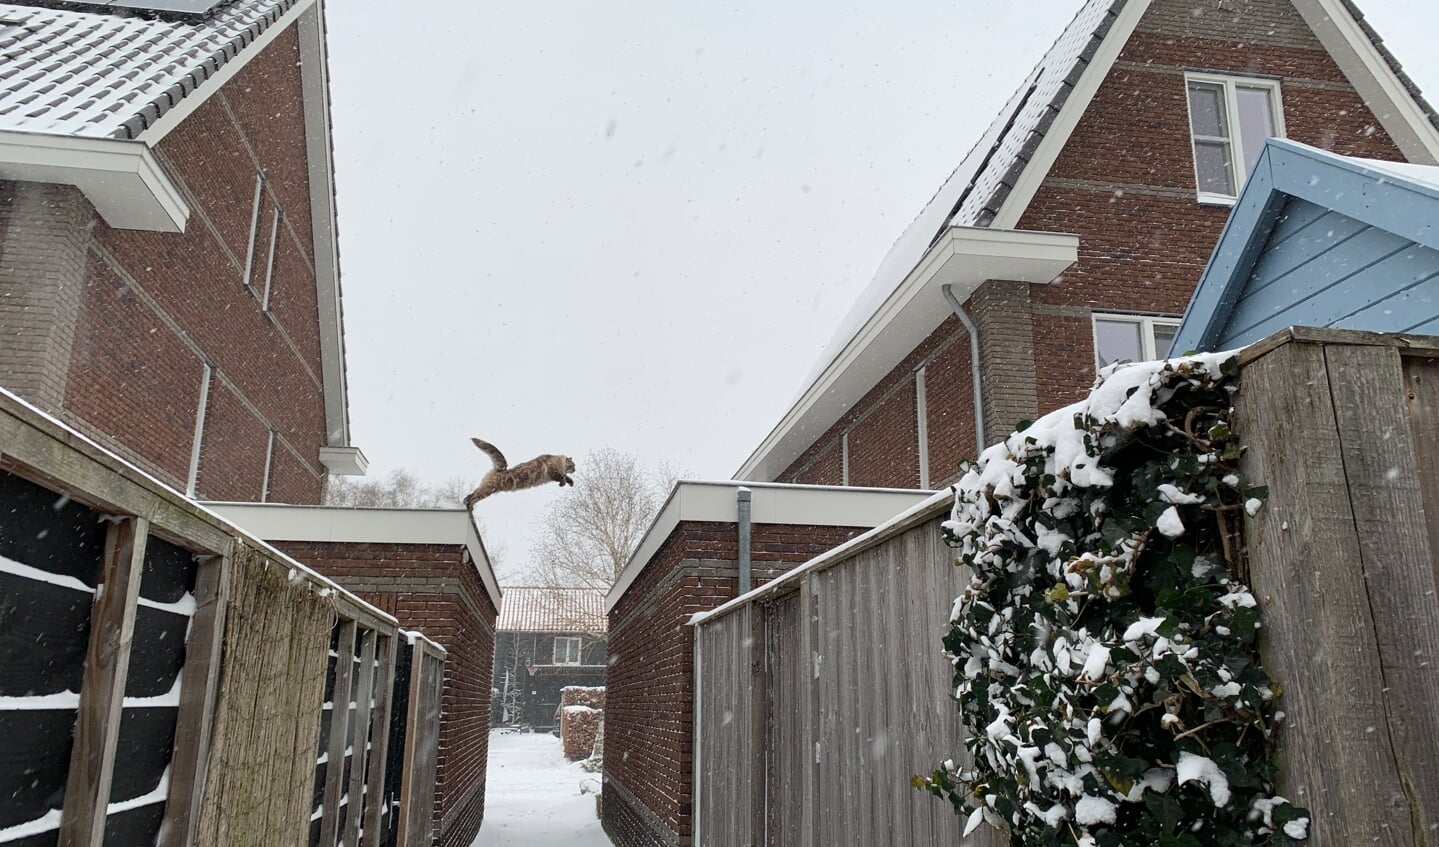 Kat springt op het dak in de sneeuw op de Hensjesweg in Barneveld. De kat heet meneer Lodewijk :-) Ingezonden door Carola Achterstraat/